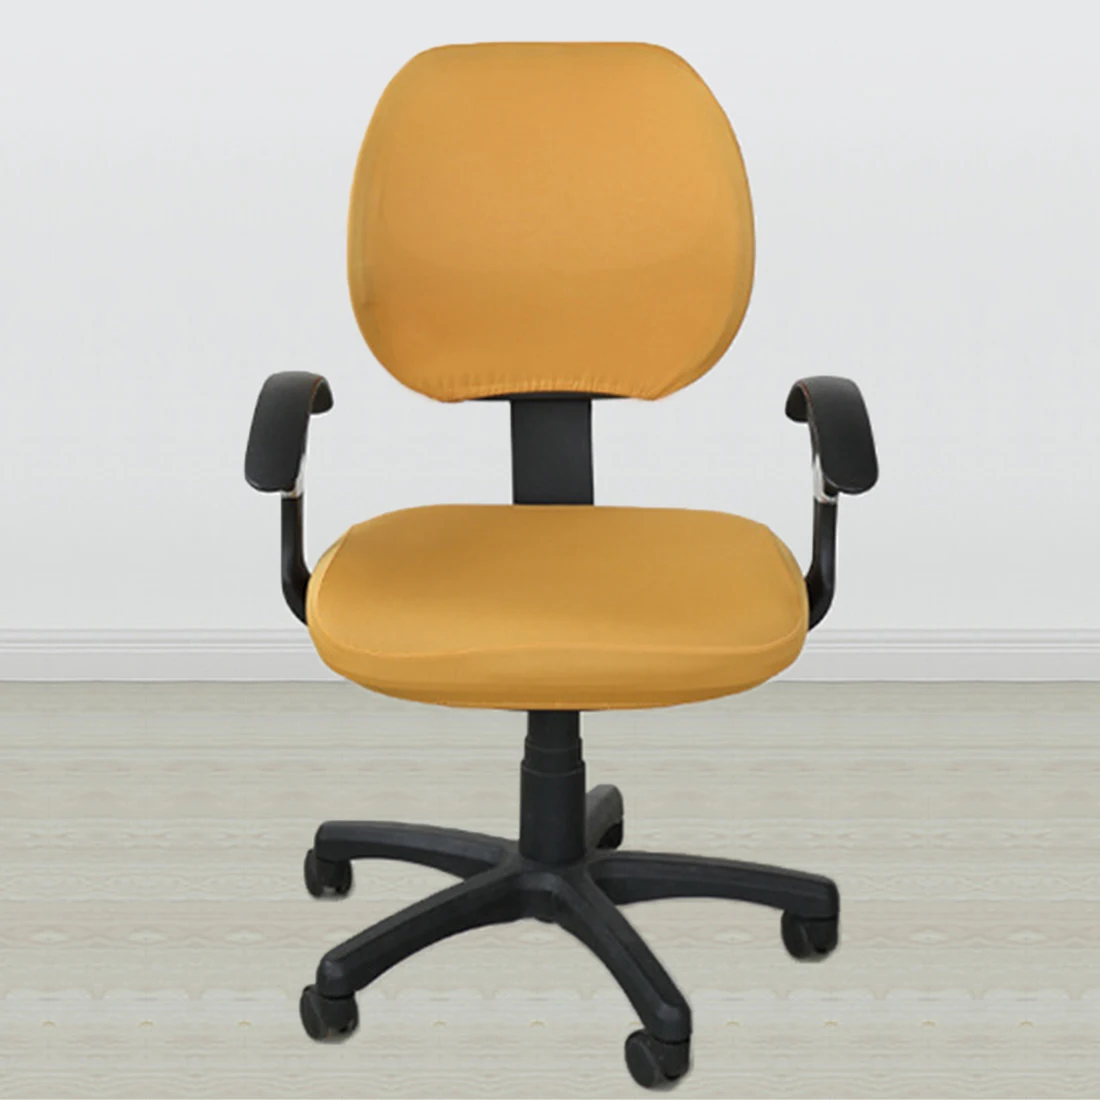 20 цветов, съемные чехлы для стульев из спандекса, эластичные Чехлы для офисных стульев для компьютерного стула, декоративное покрытие - Цвет: orange